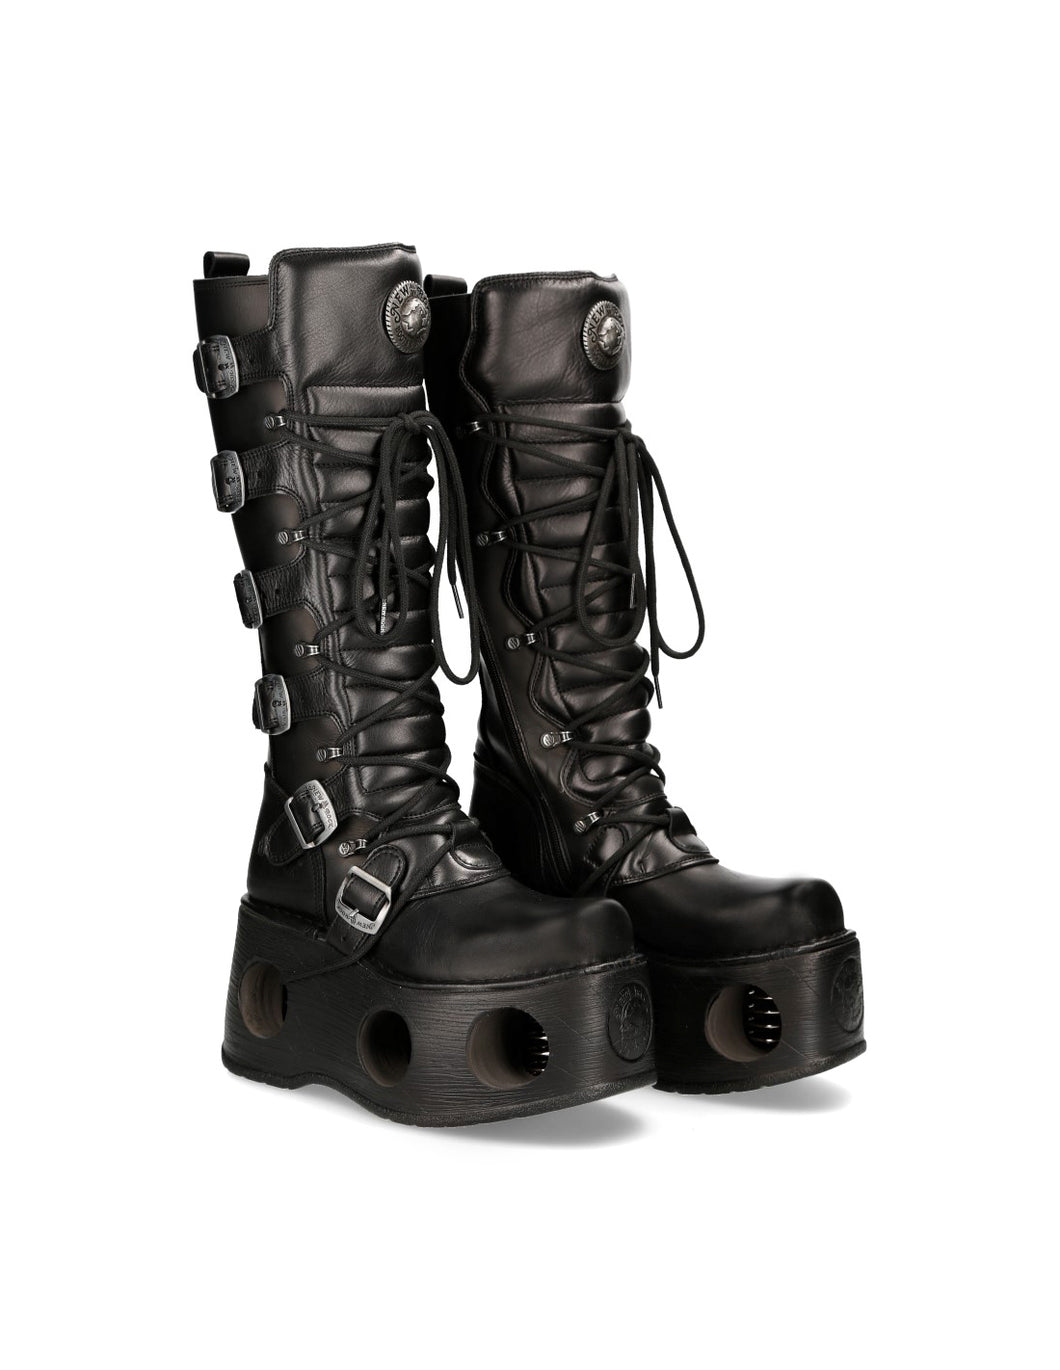 New Rock Schuhe High Boots M-272-S2 Stiefel Gothic Echtleder mit Sprungfeder